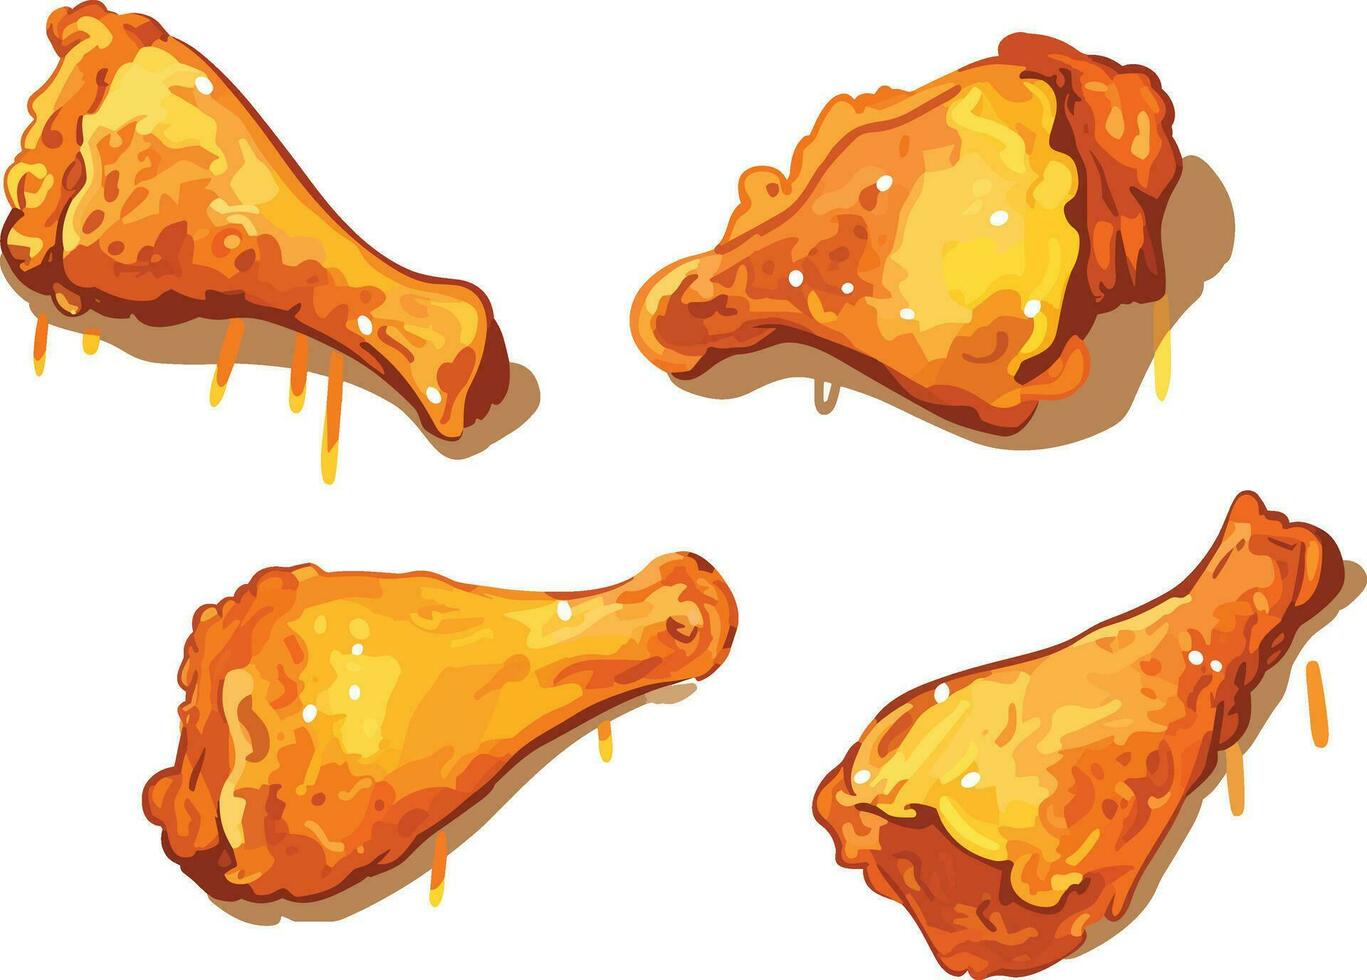 ensemble de chaud et croustillant poulet jambe pièces illustration, ensemble de frit poulet pièces illustration vecteur